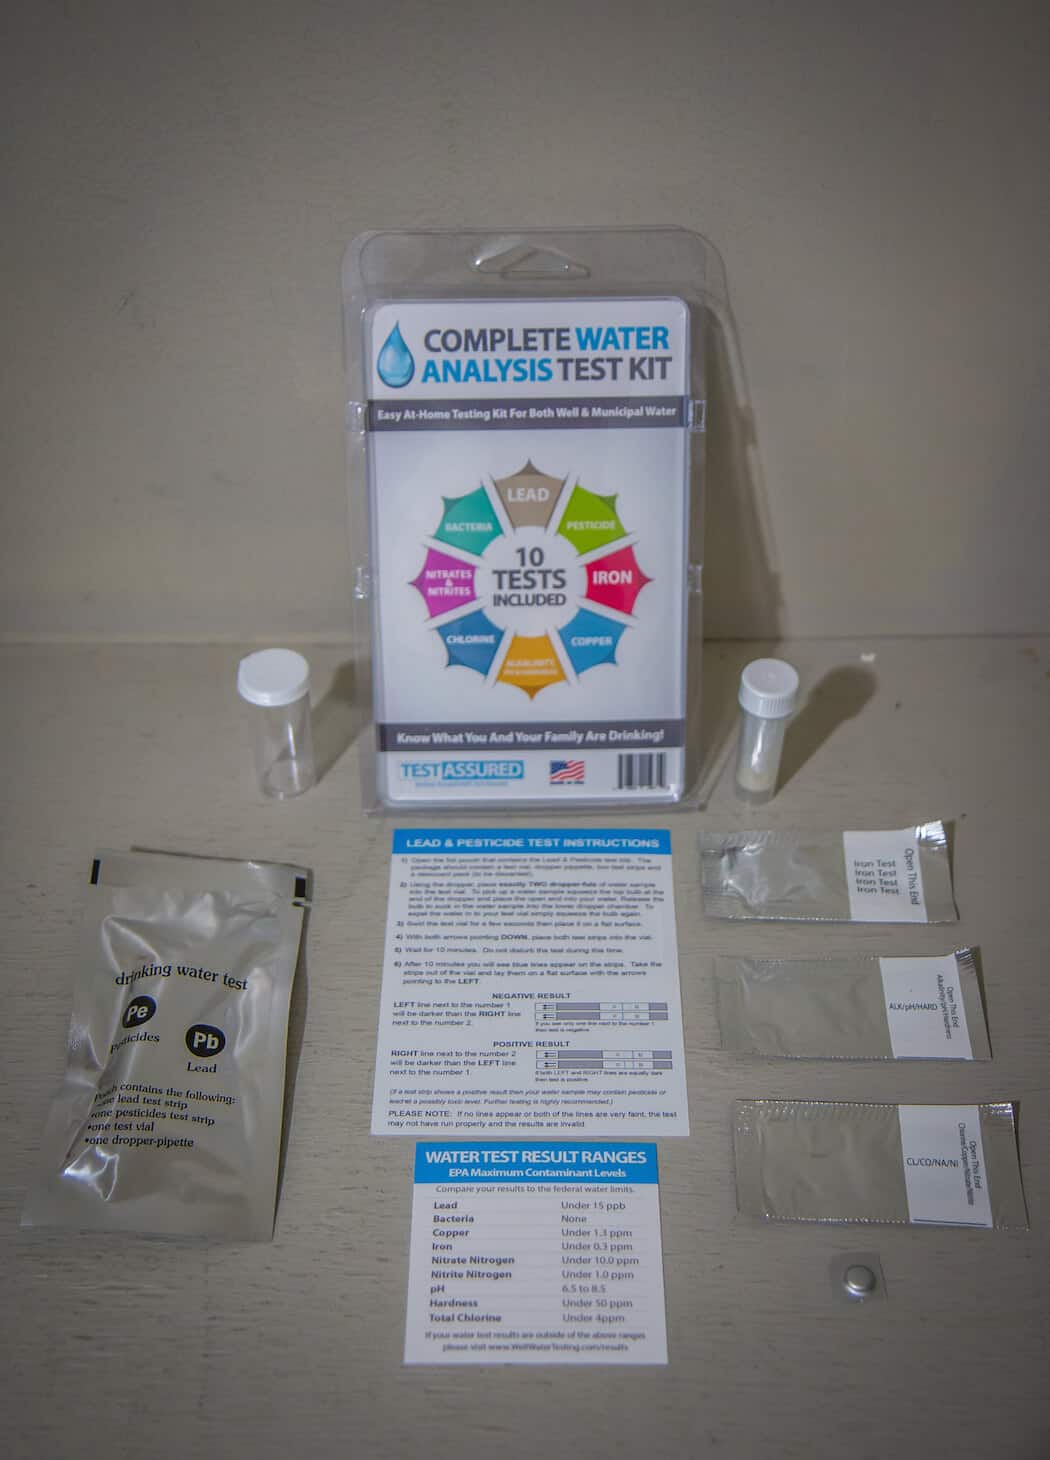 TestAssured Drinking Water Test Kit